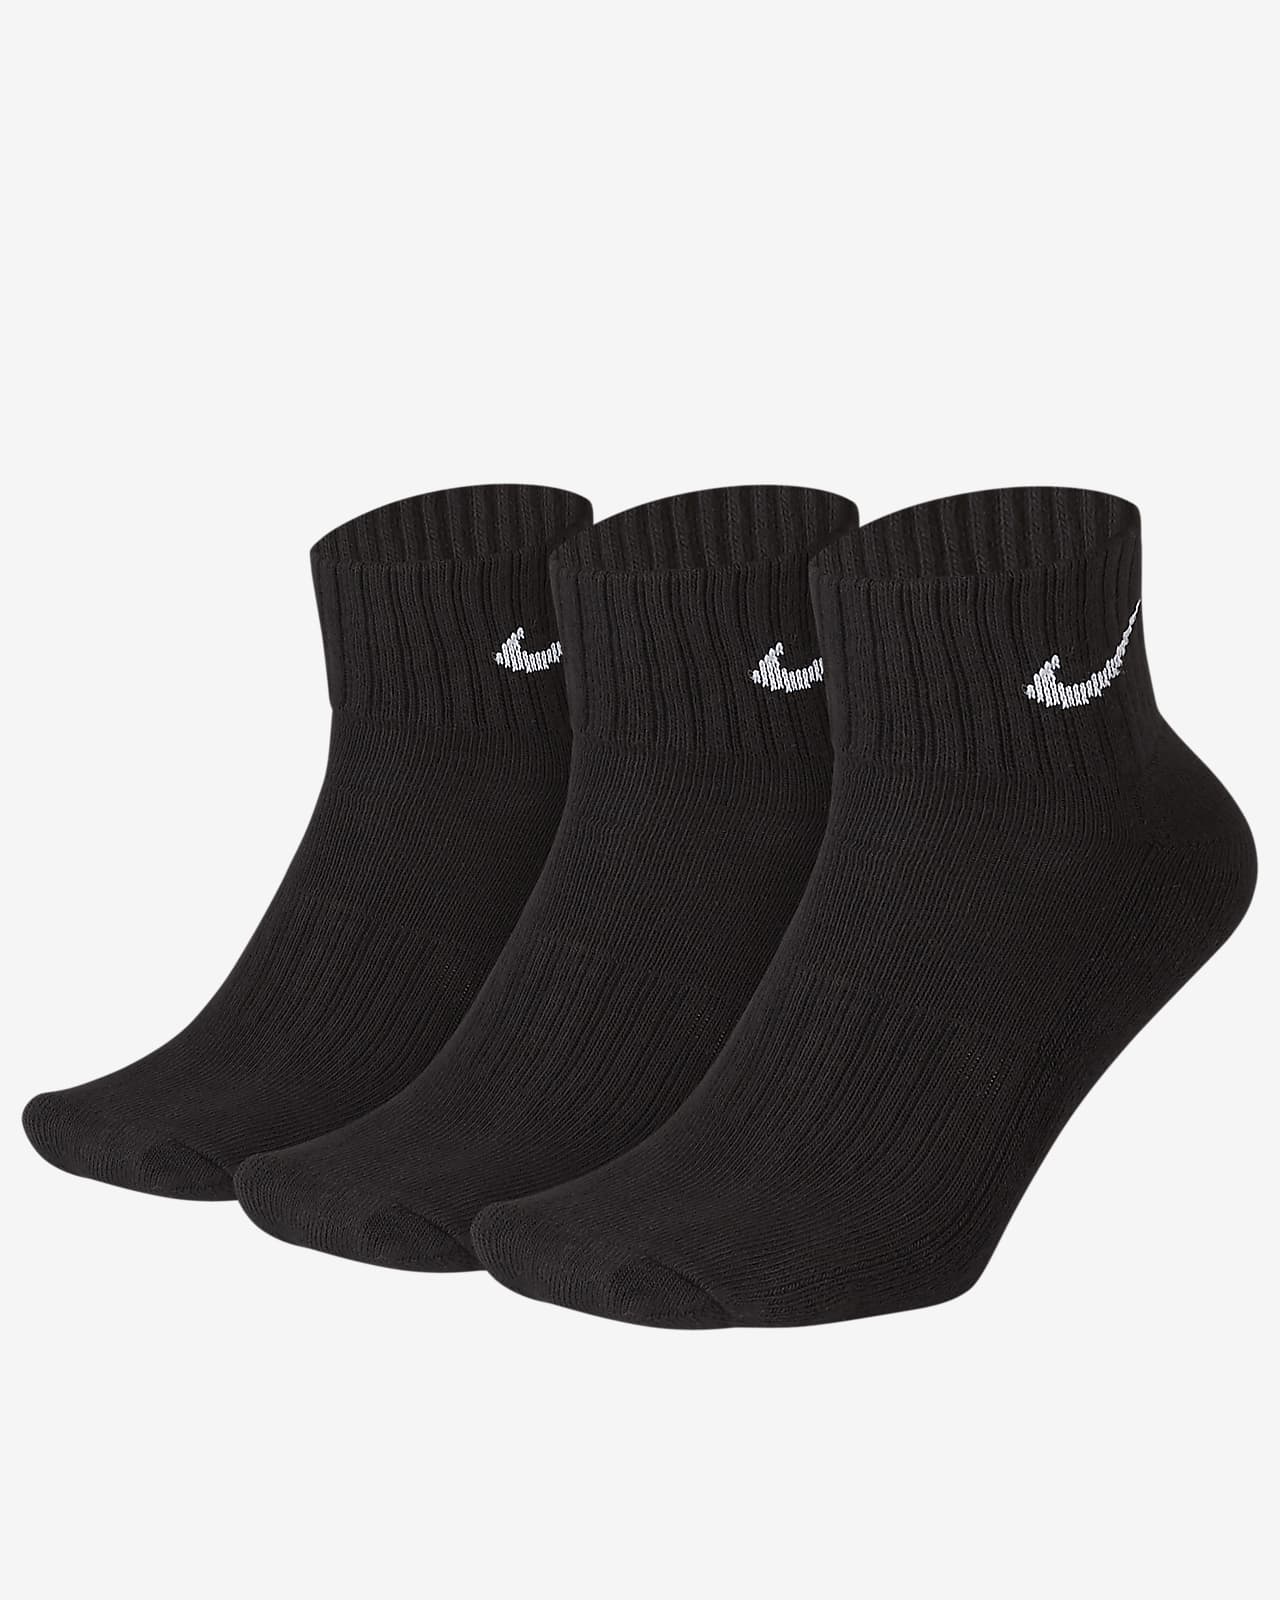 Socquettes rembourrées Nike (3 paires)